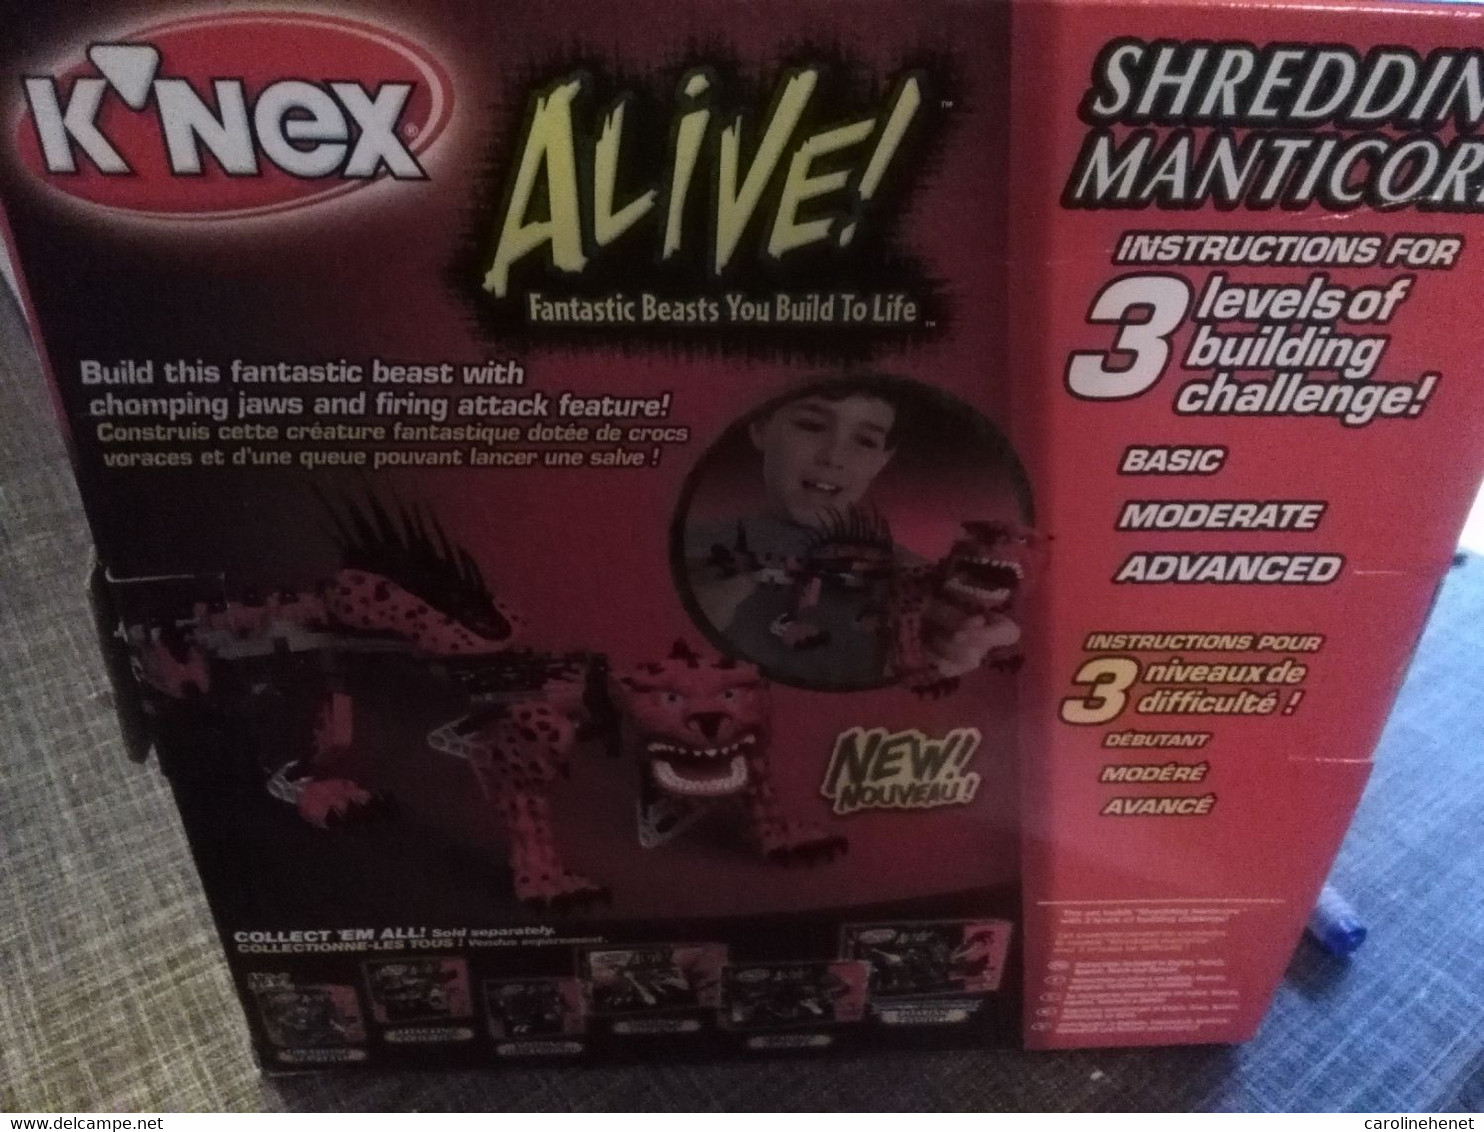 K'nex Alive! (Shredding Manticore) - K'nex